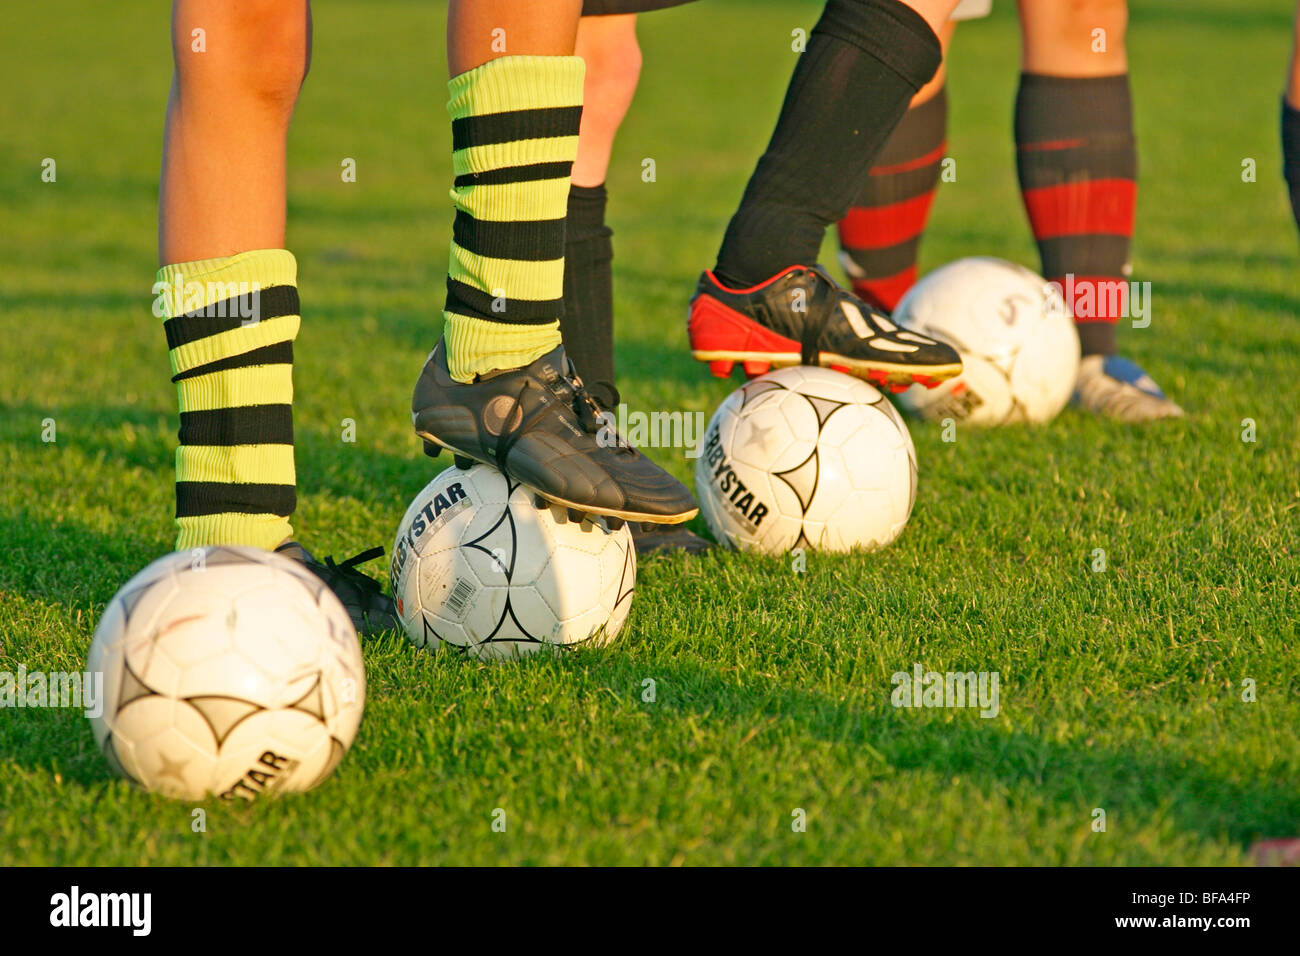 Beine des jungen im Teenageralter Fußball spielen Stockfoto